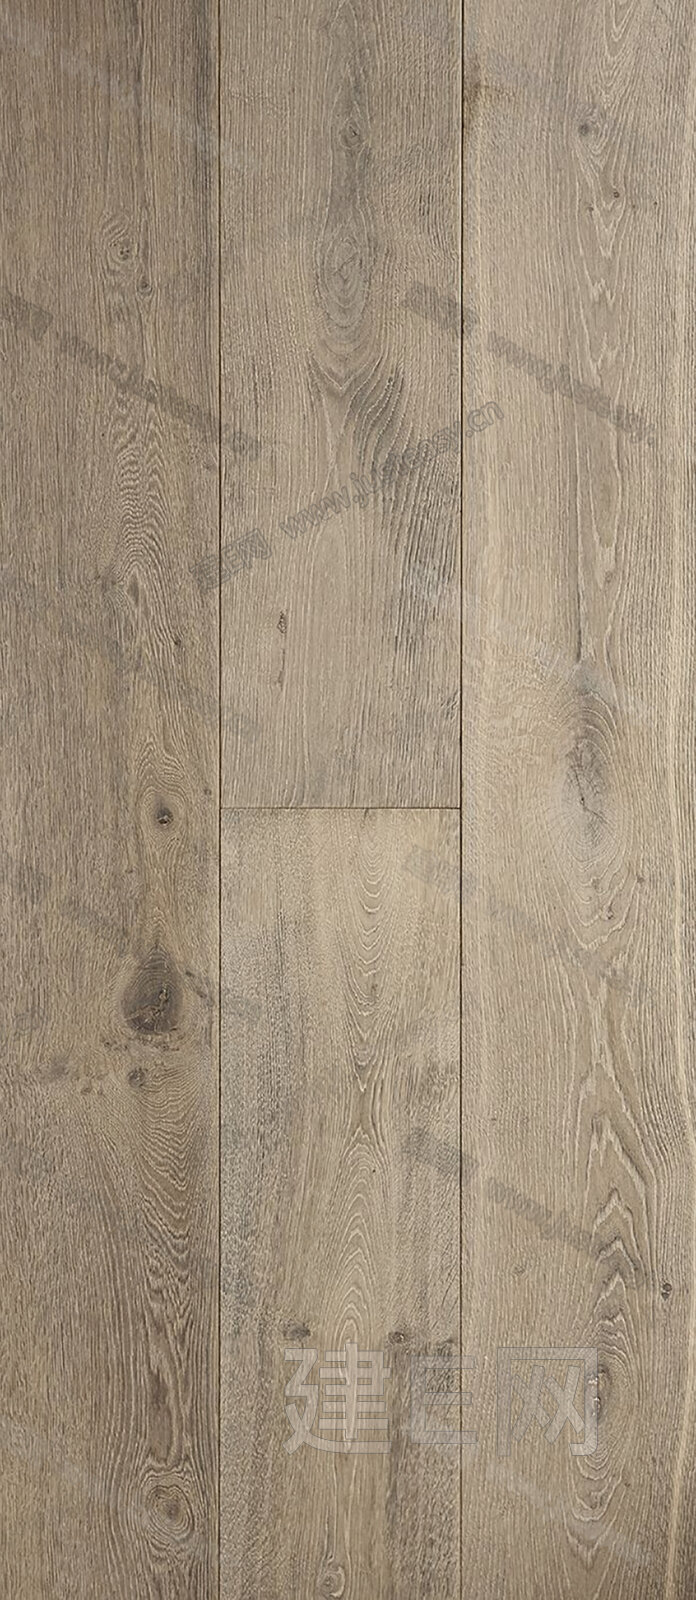 原木色木地板木板3d贴图